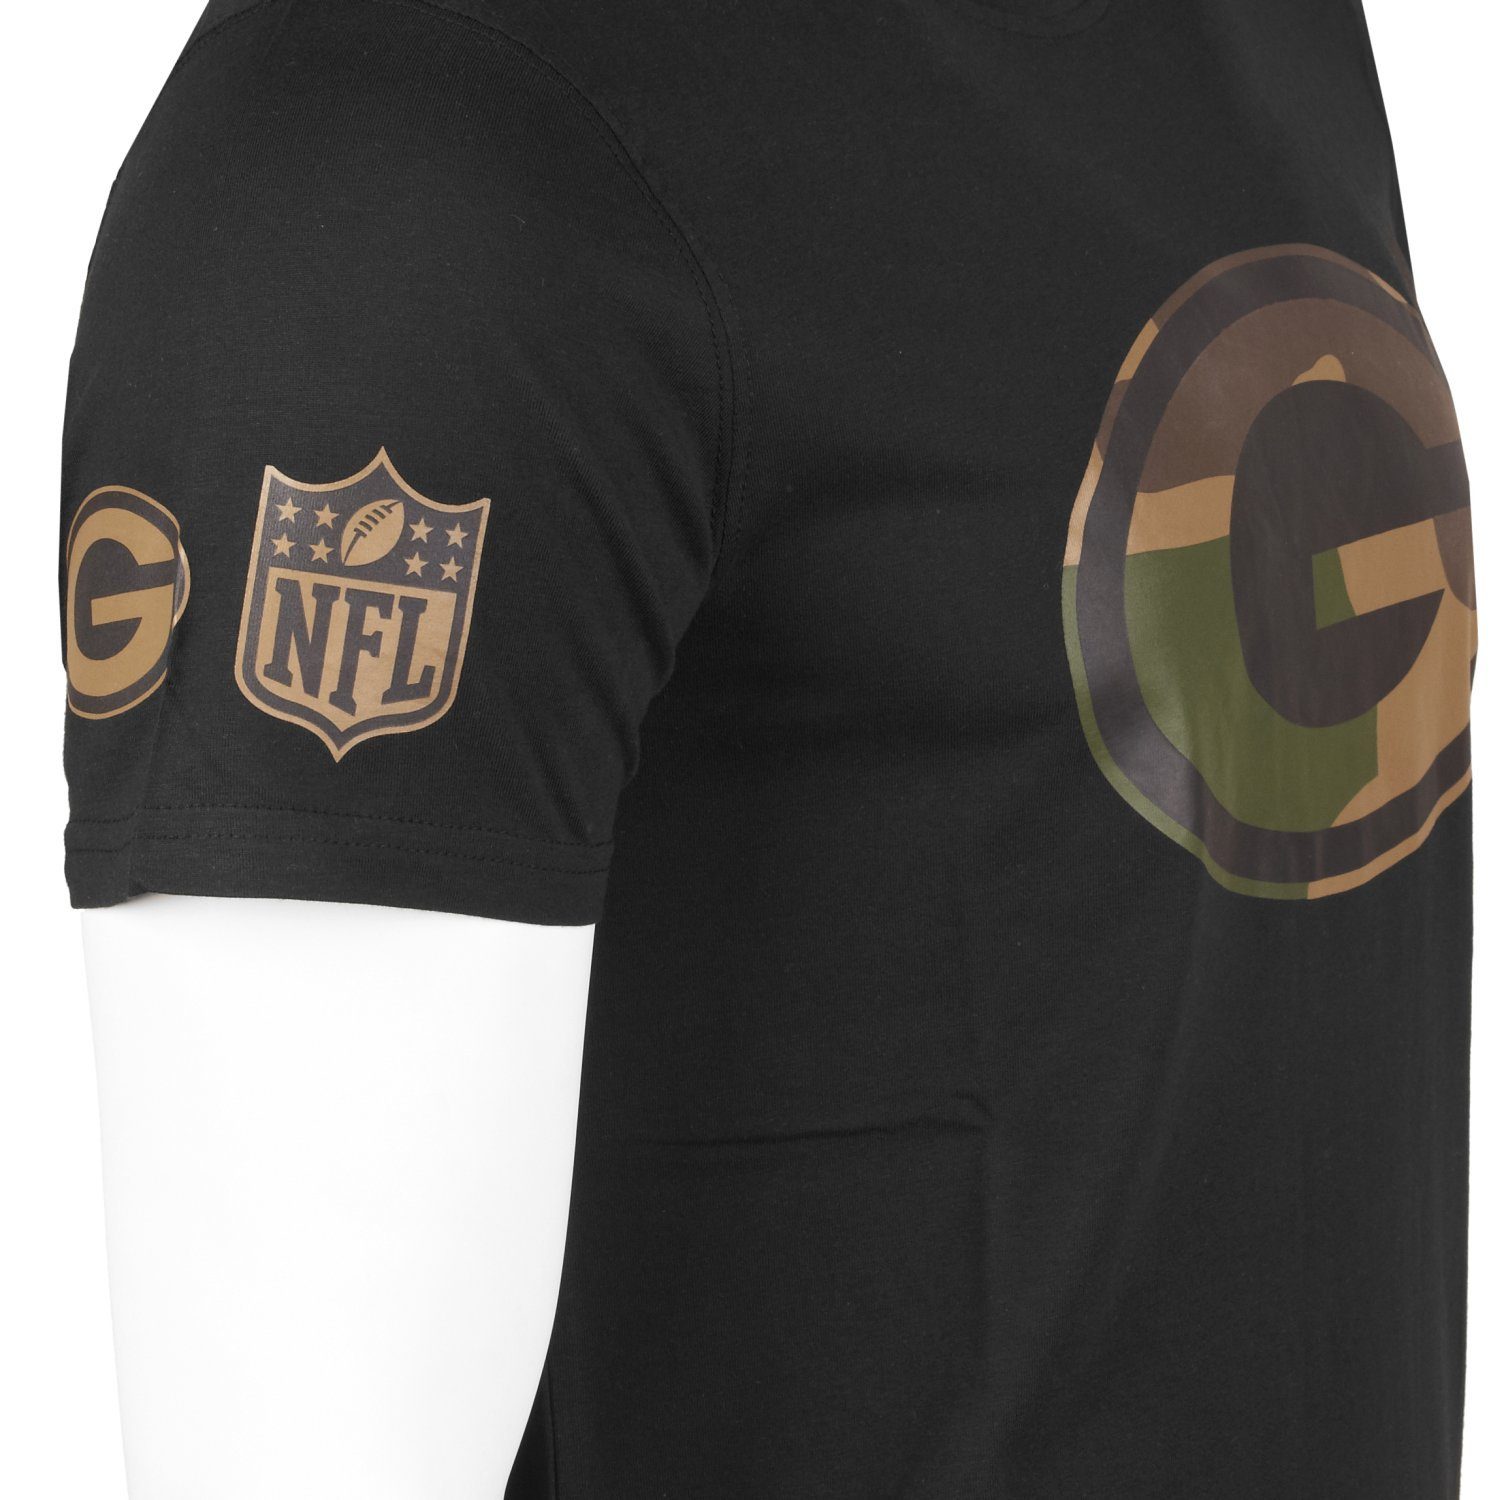 Print-Shirt Football Green New Teams Era NFL Packers Bay